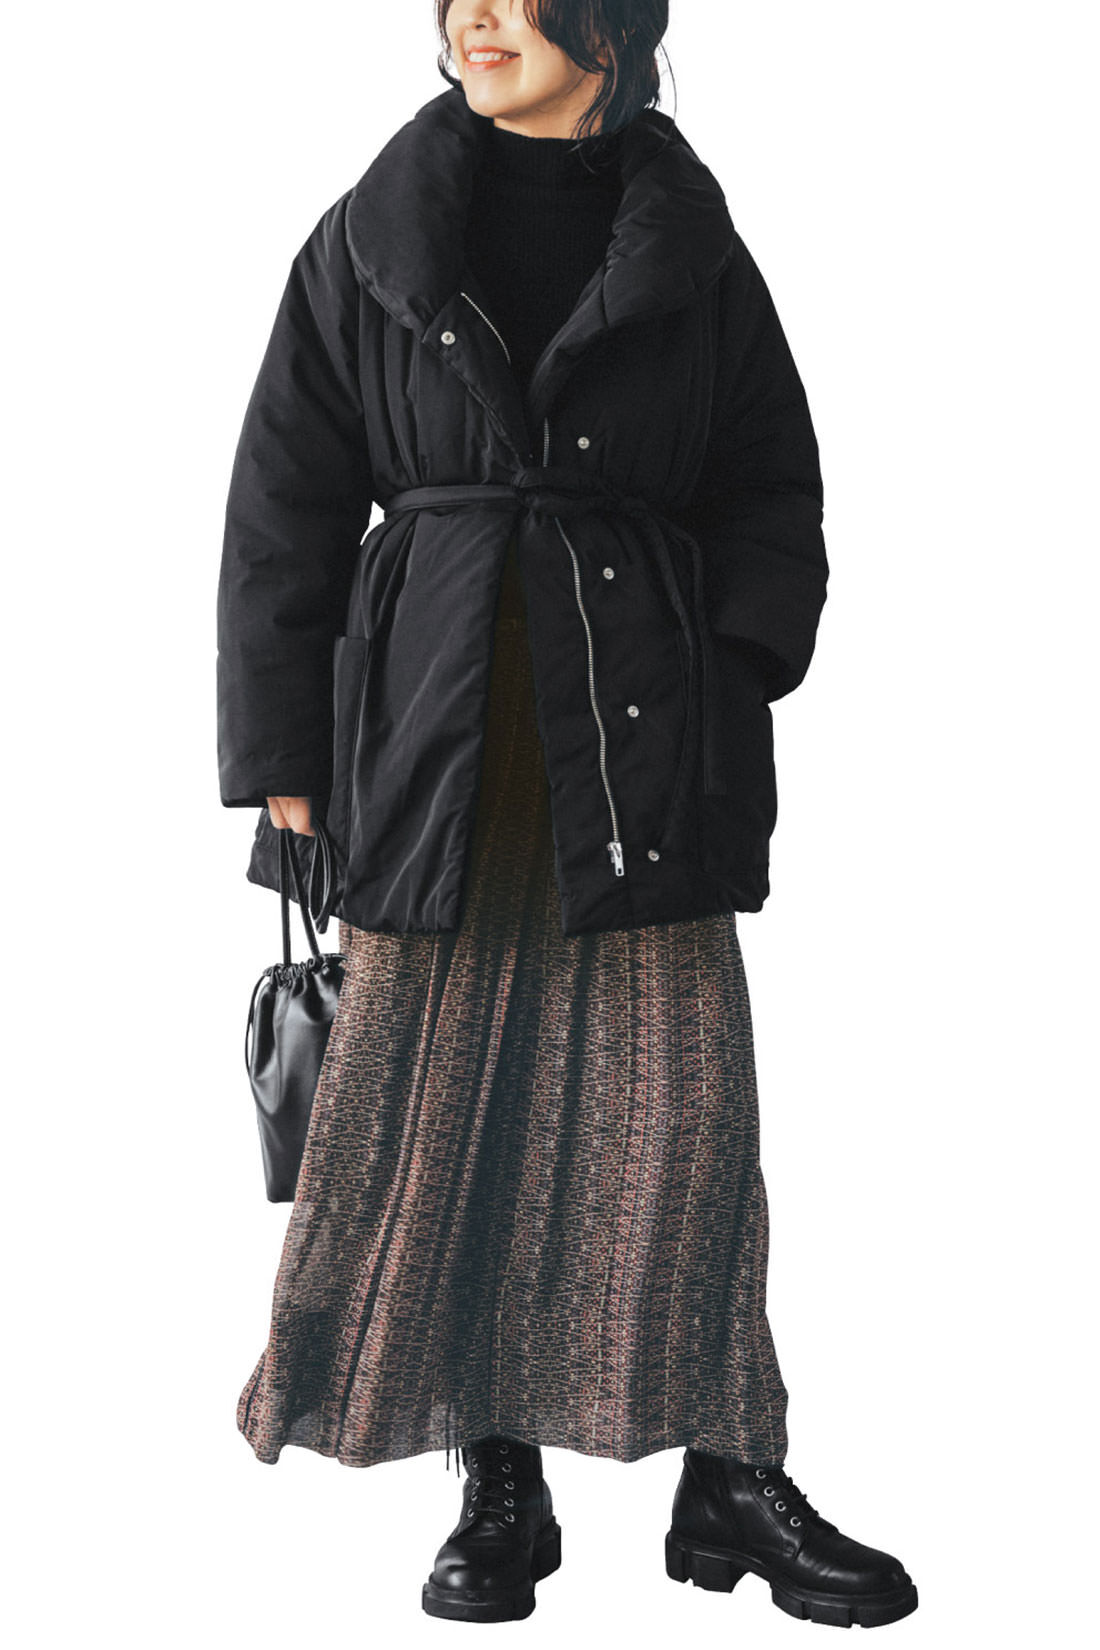 IEDIT|IEDIT[イディット]　福田麻琴さんコラボ　サステナブル素材で未来にやさしい　女っぷりが上がる中わたミディコート〈ブラック〉|ウエストマークのベルトが女っぽい印象に。